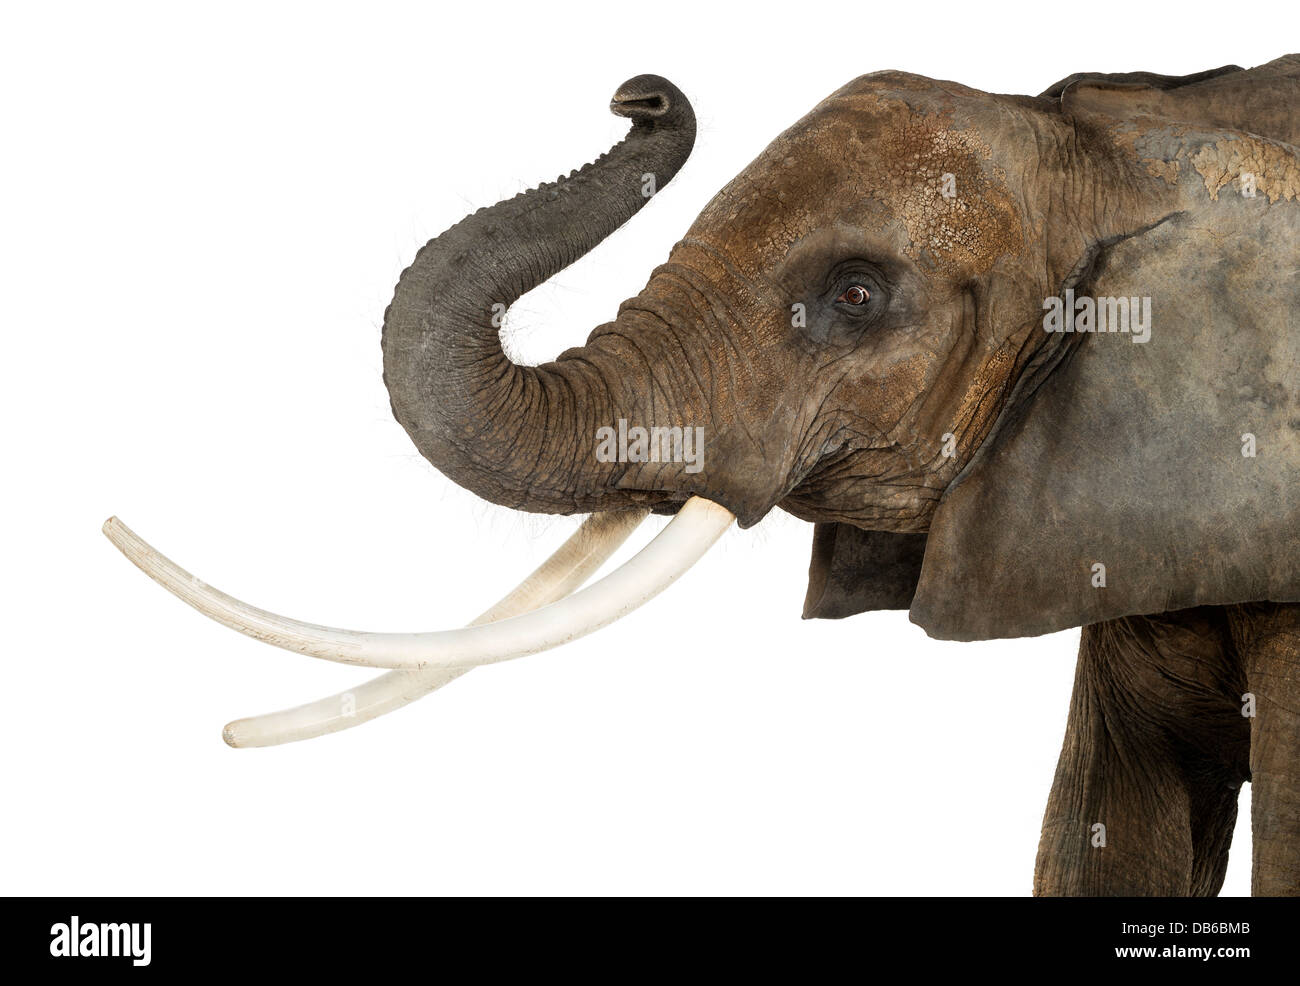 Close up di un elefante africano Loxodonta africana, sollevando il suo tronco contro uno sfondo bianco Foto Stock